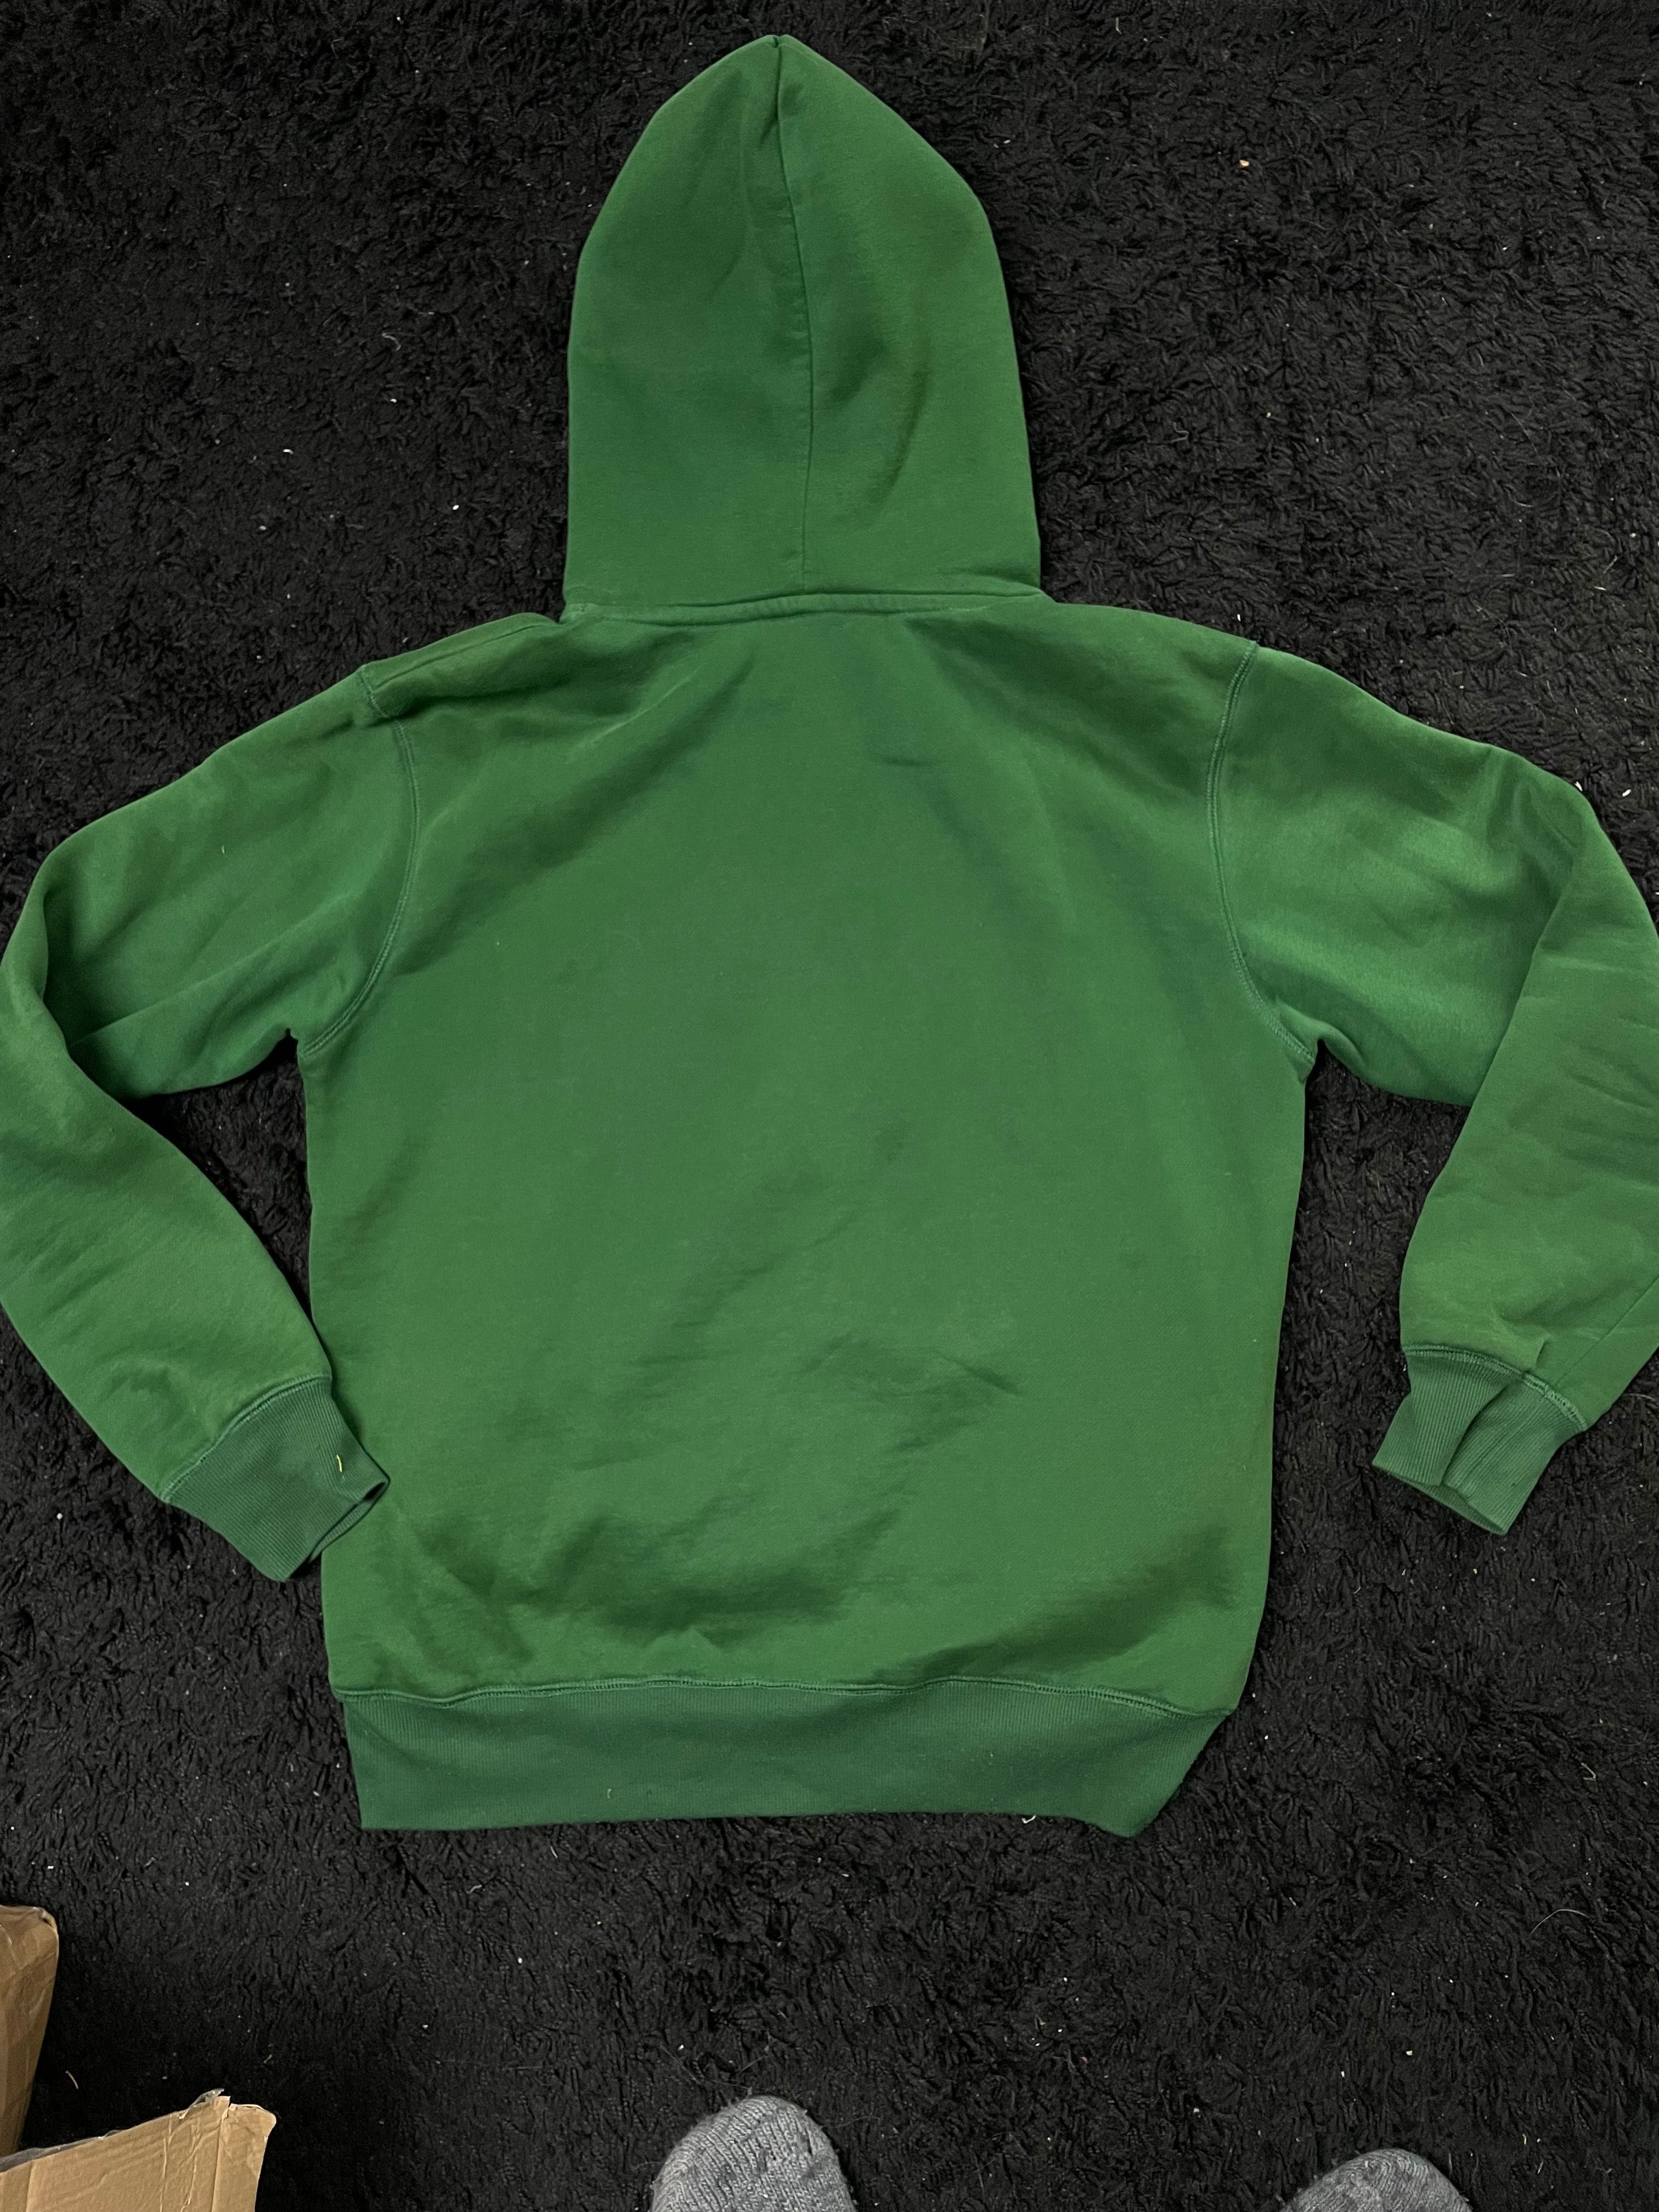 Abercrombie zielona bluza. Ideał